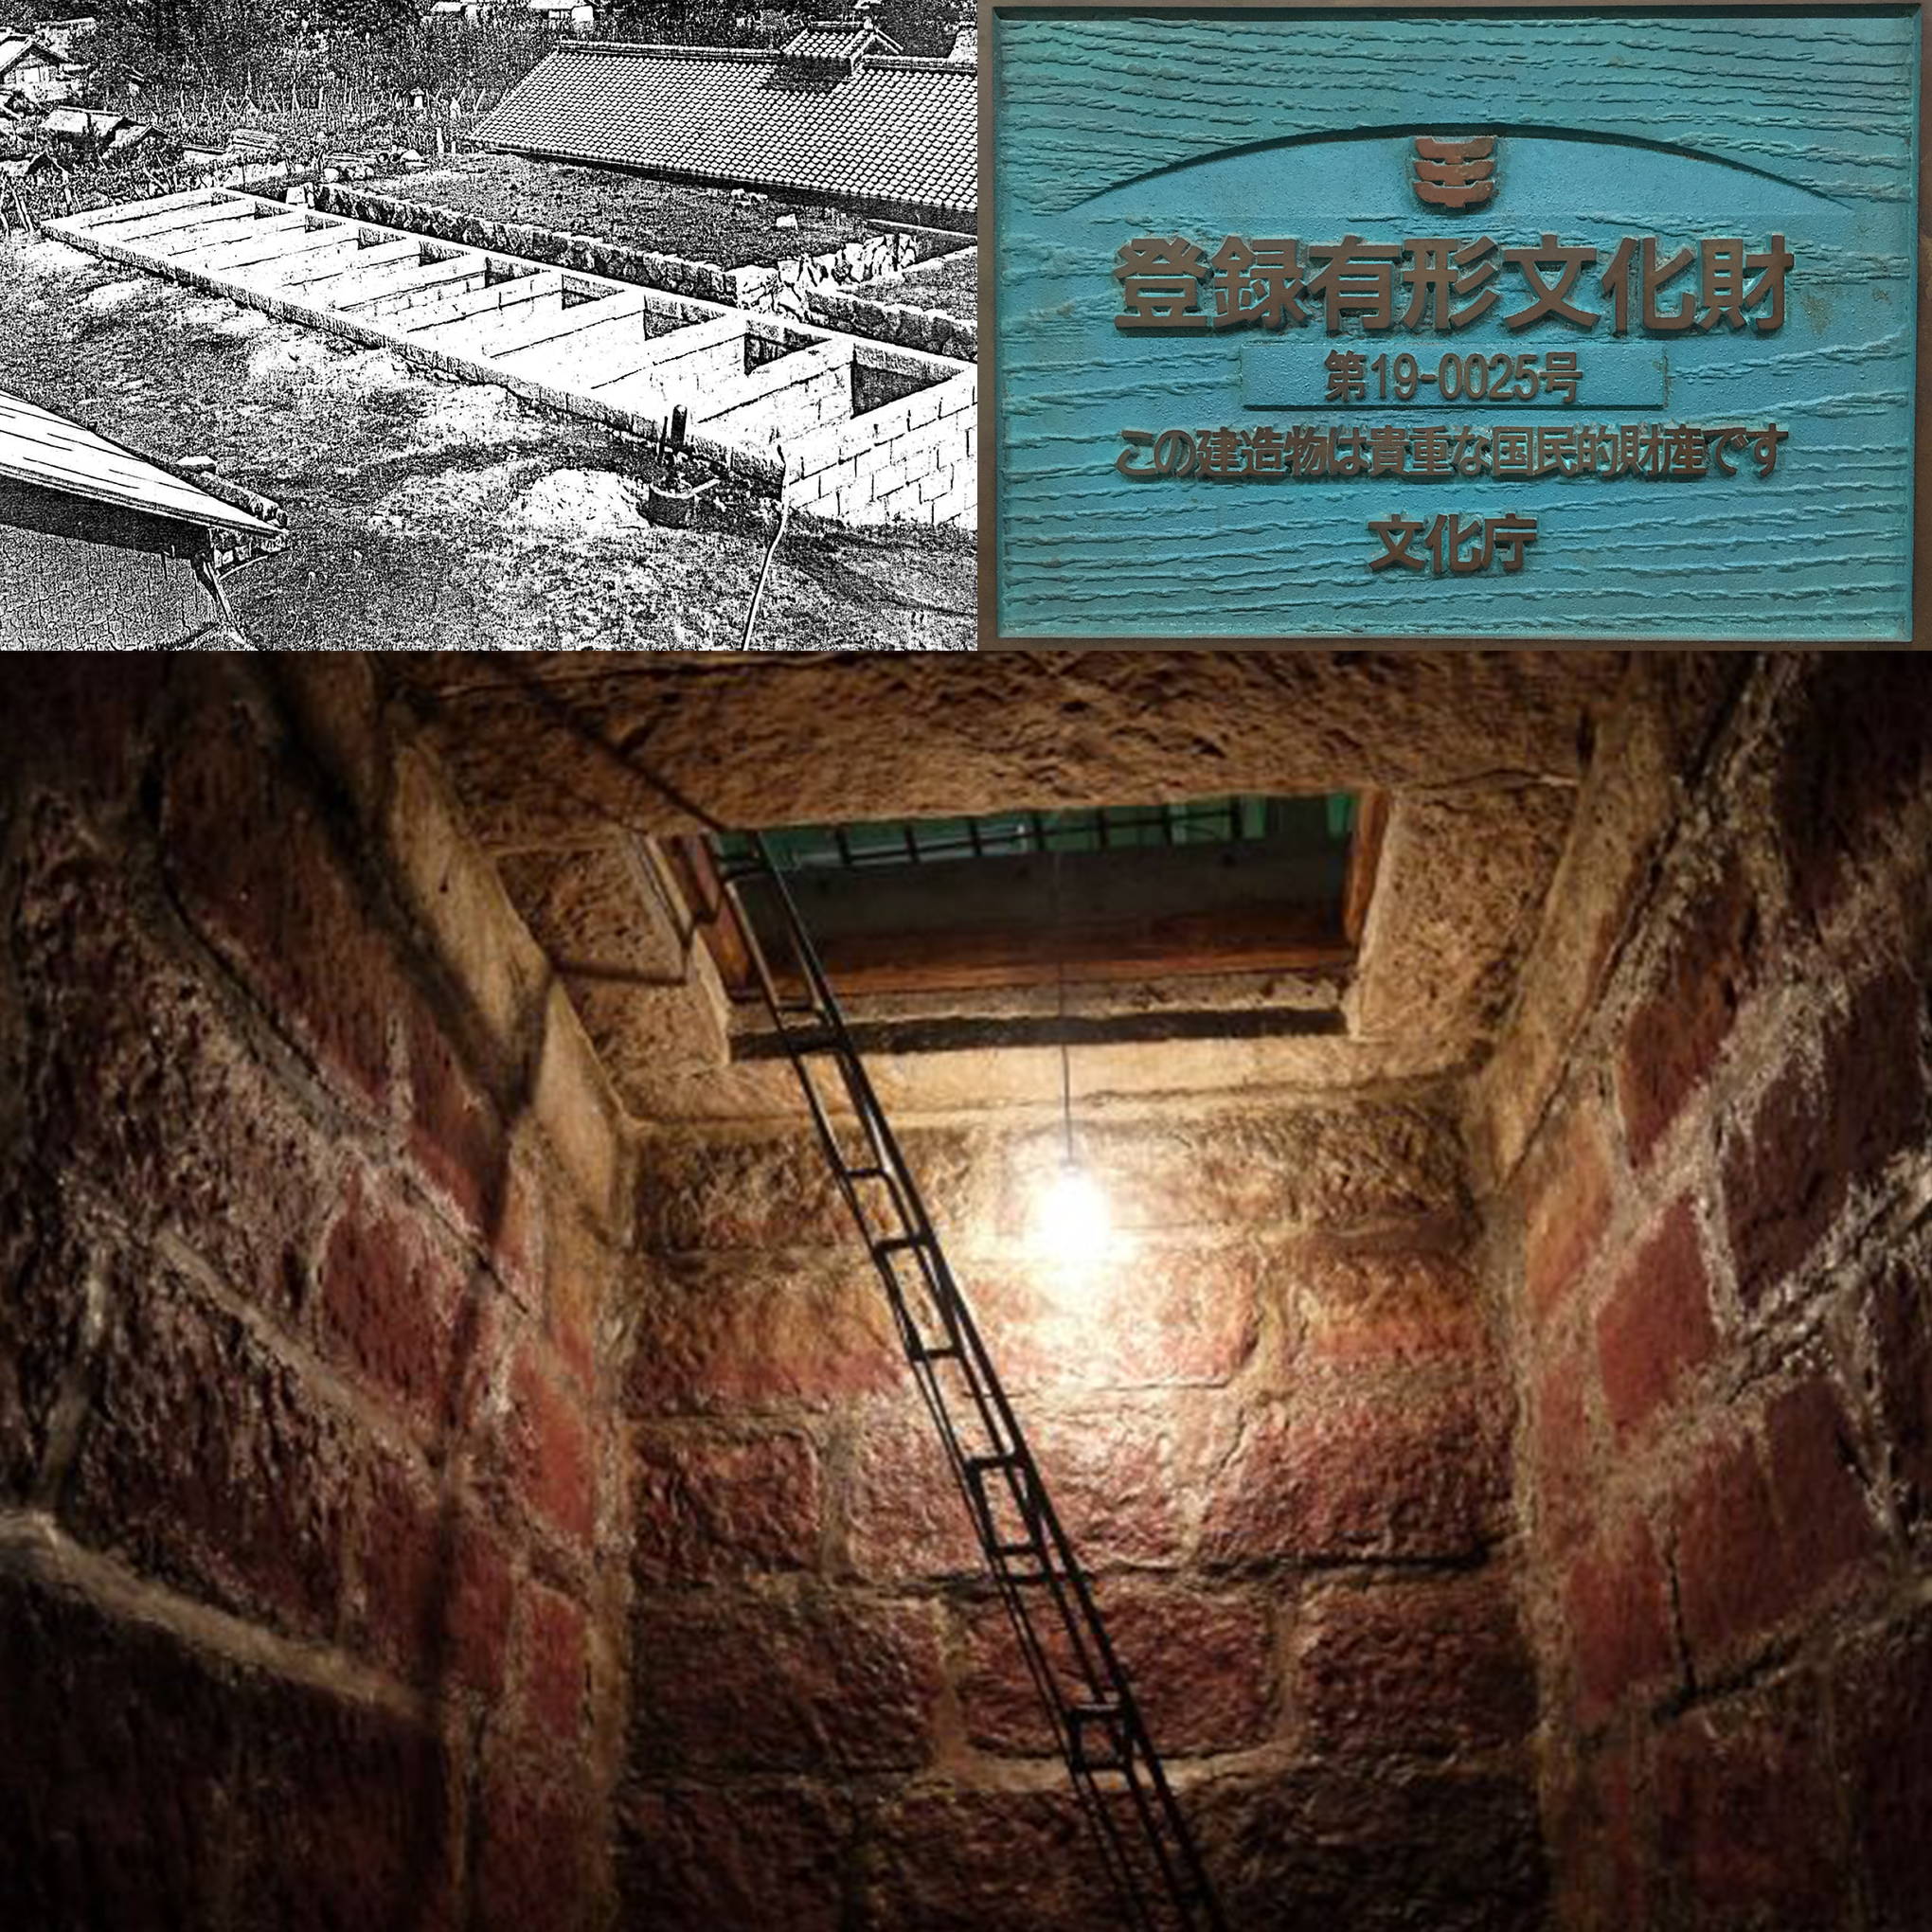 ルミエールワイナリーの石蔵発酵槽は、登録有形文化財に認定。老舗の歴史を雄弁に語る産業遺産は、今も現役！